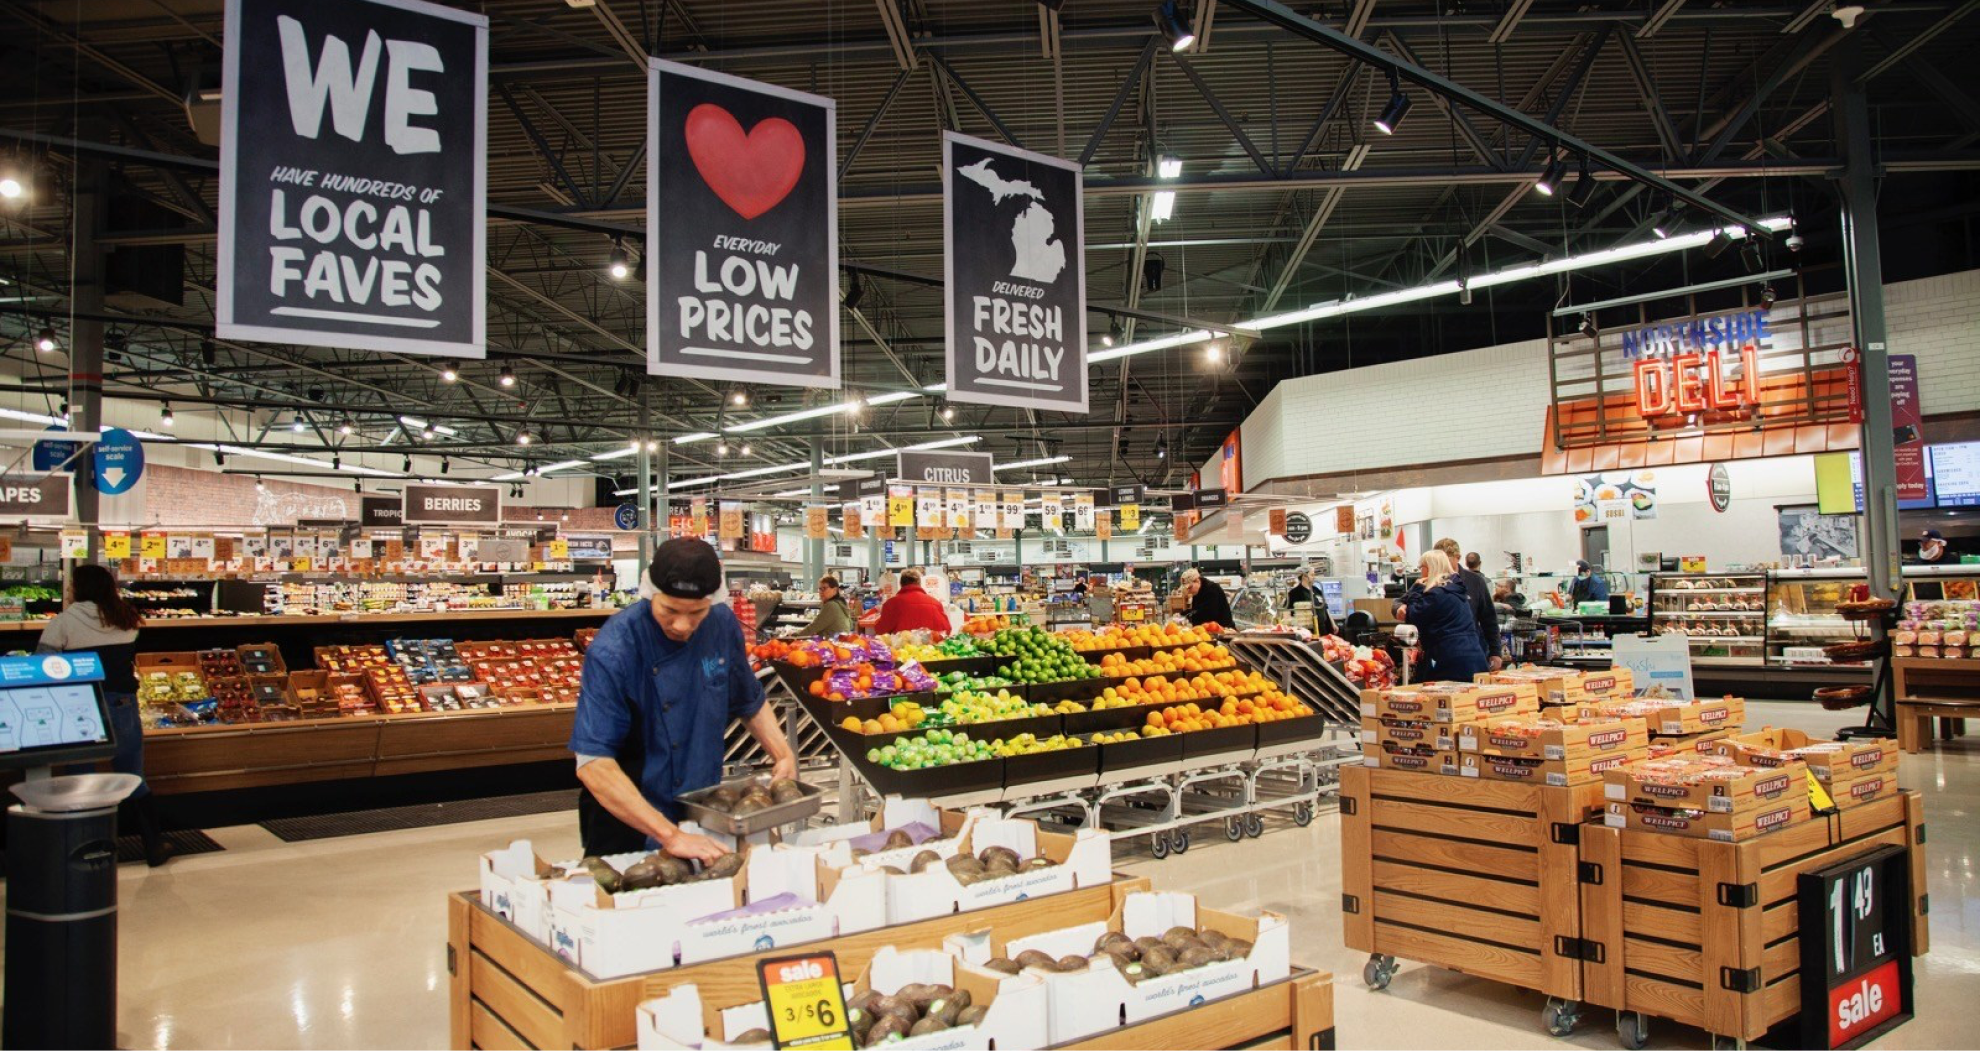 produce area inside meijer grocery store